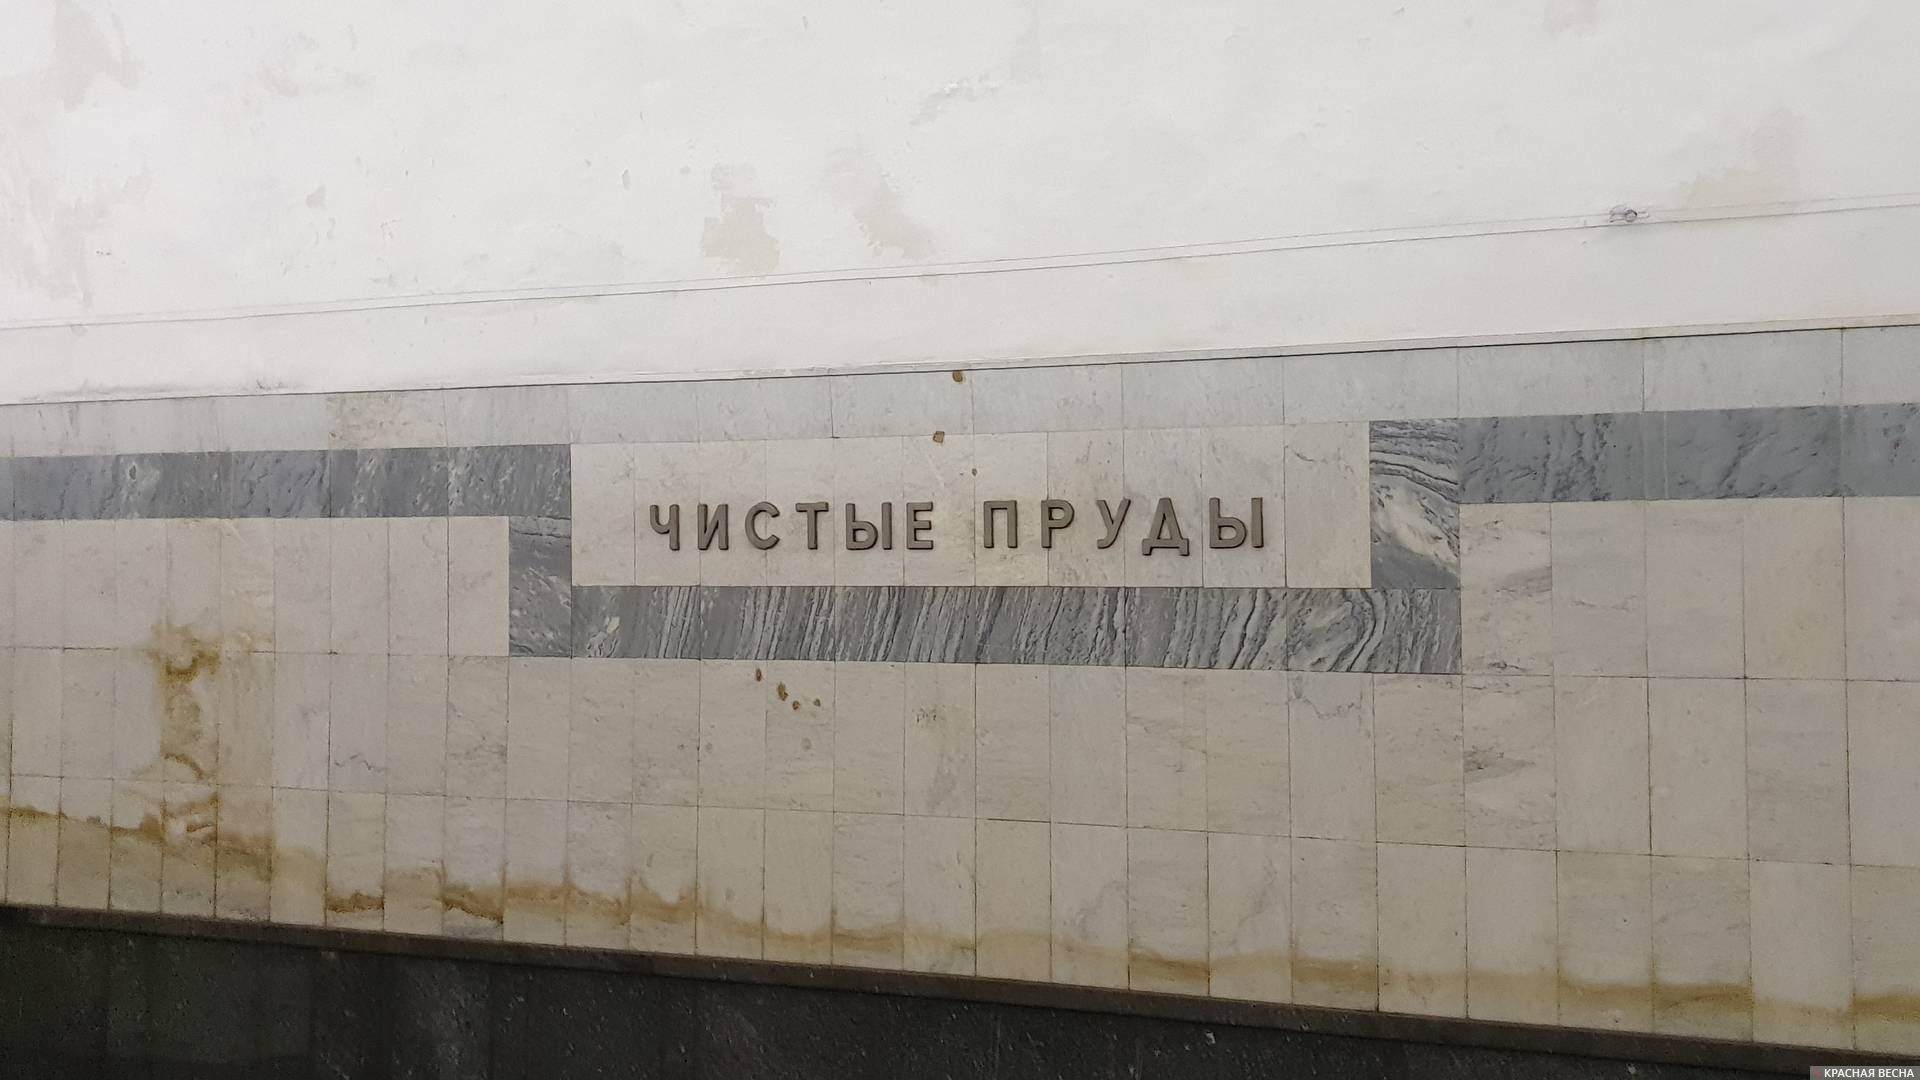 Название станции